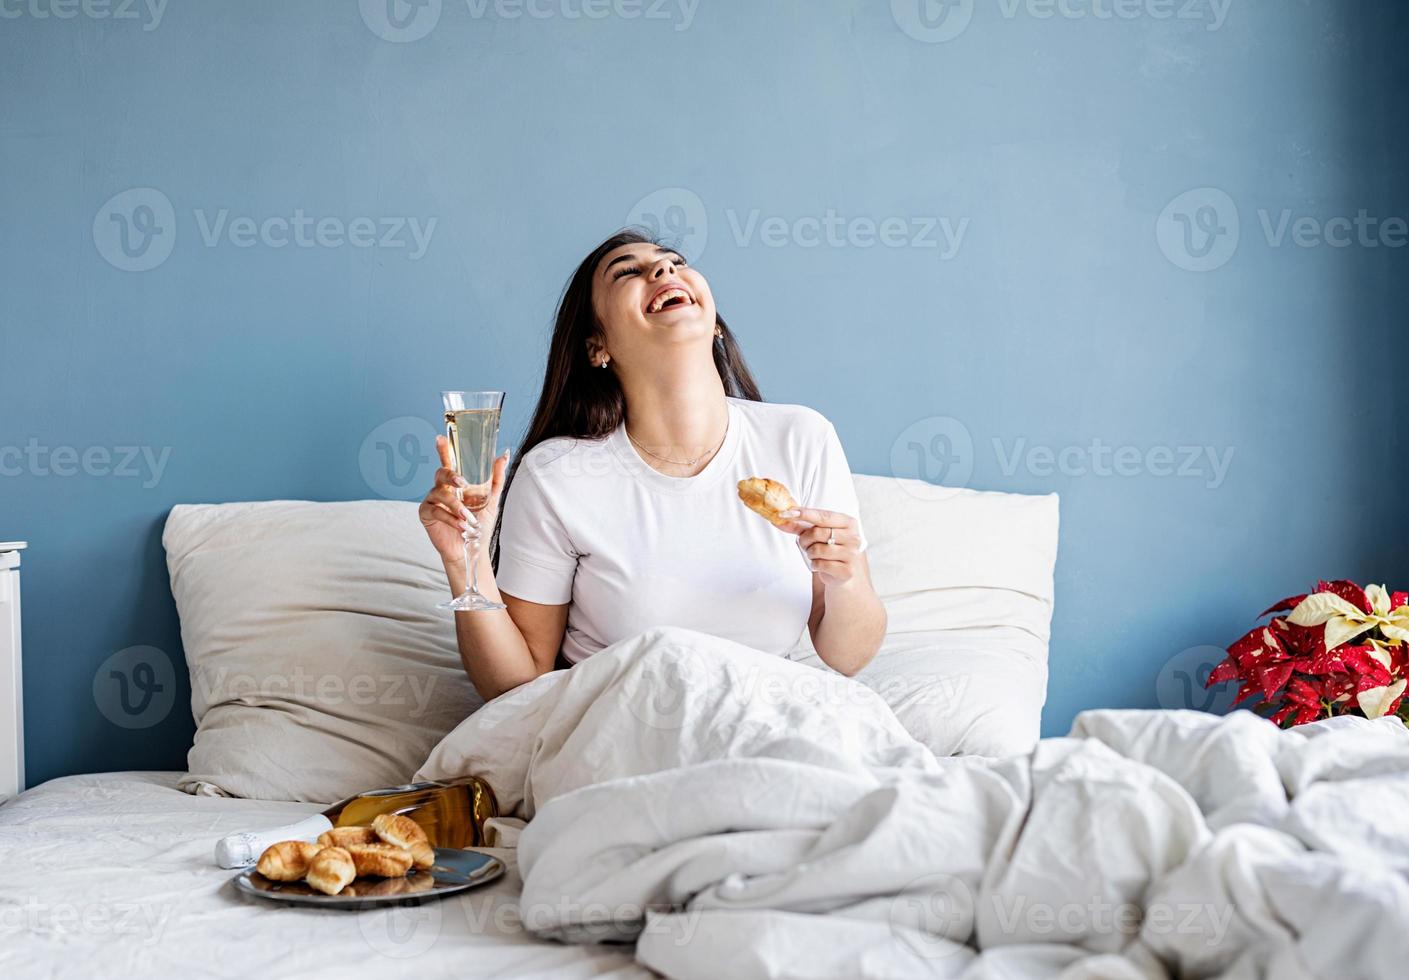 Jeune femme brune assise éveillée dans le lit avec des ballons en forme de coeur rouge et des décorations buvant du champagne en mangeant des croissants photo